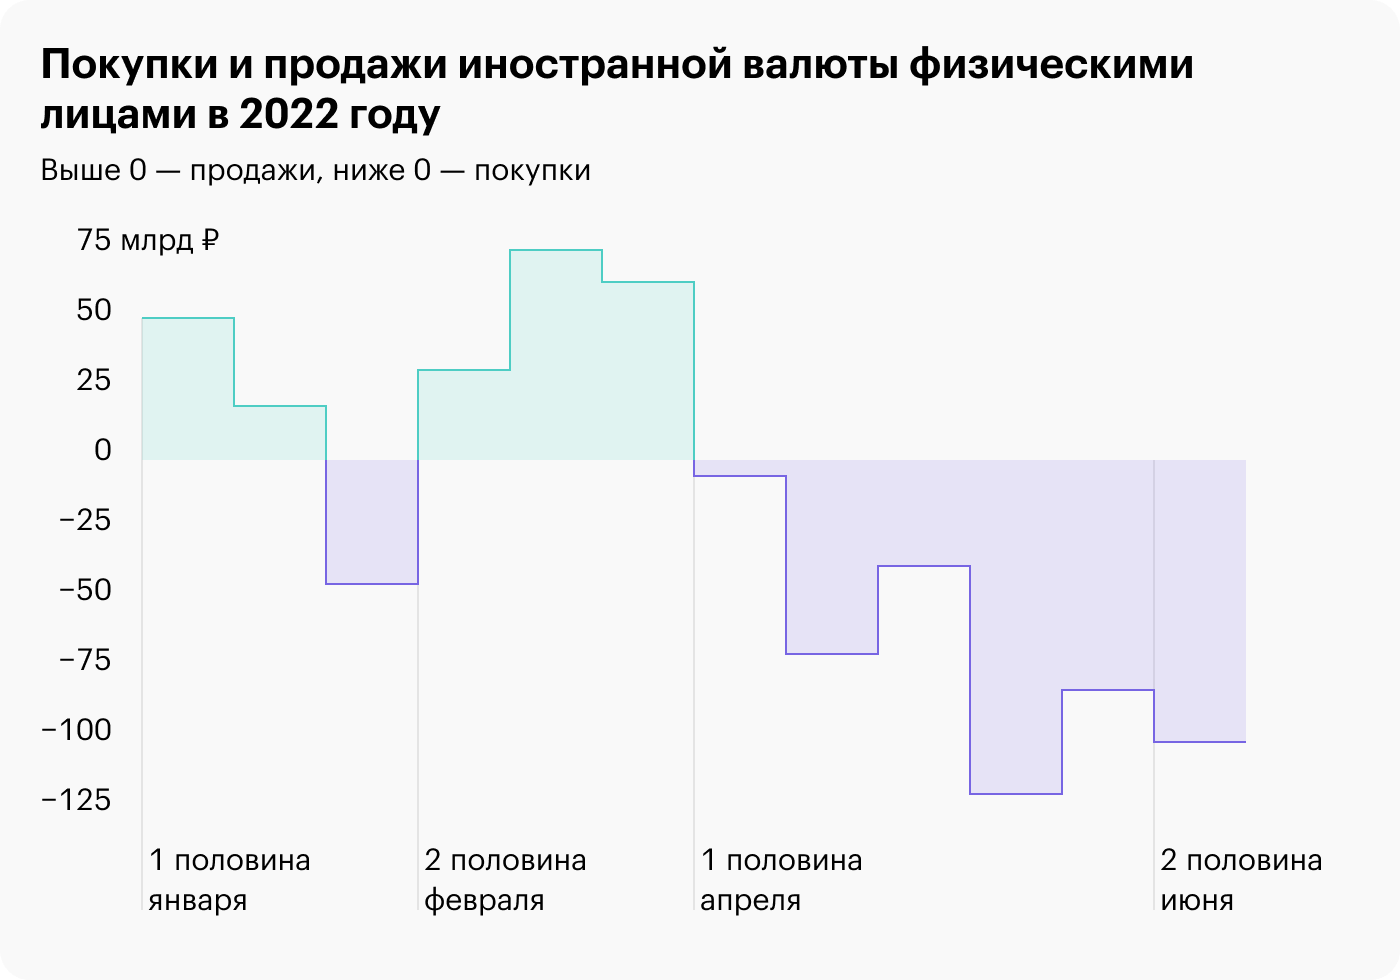 Инвесторы скупали валюту и «Газпром» на просадке: отчет ЦБ за второй квартал